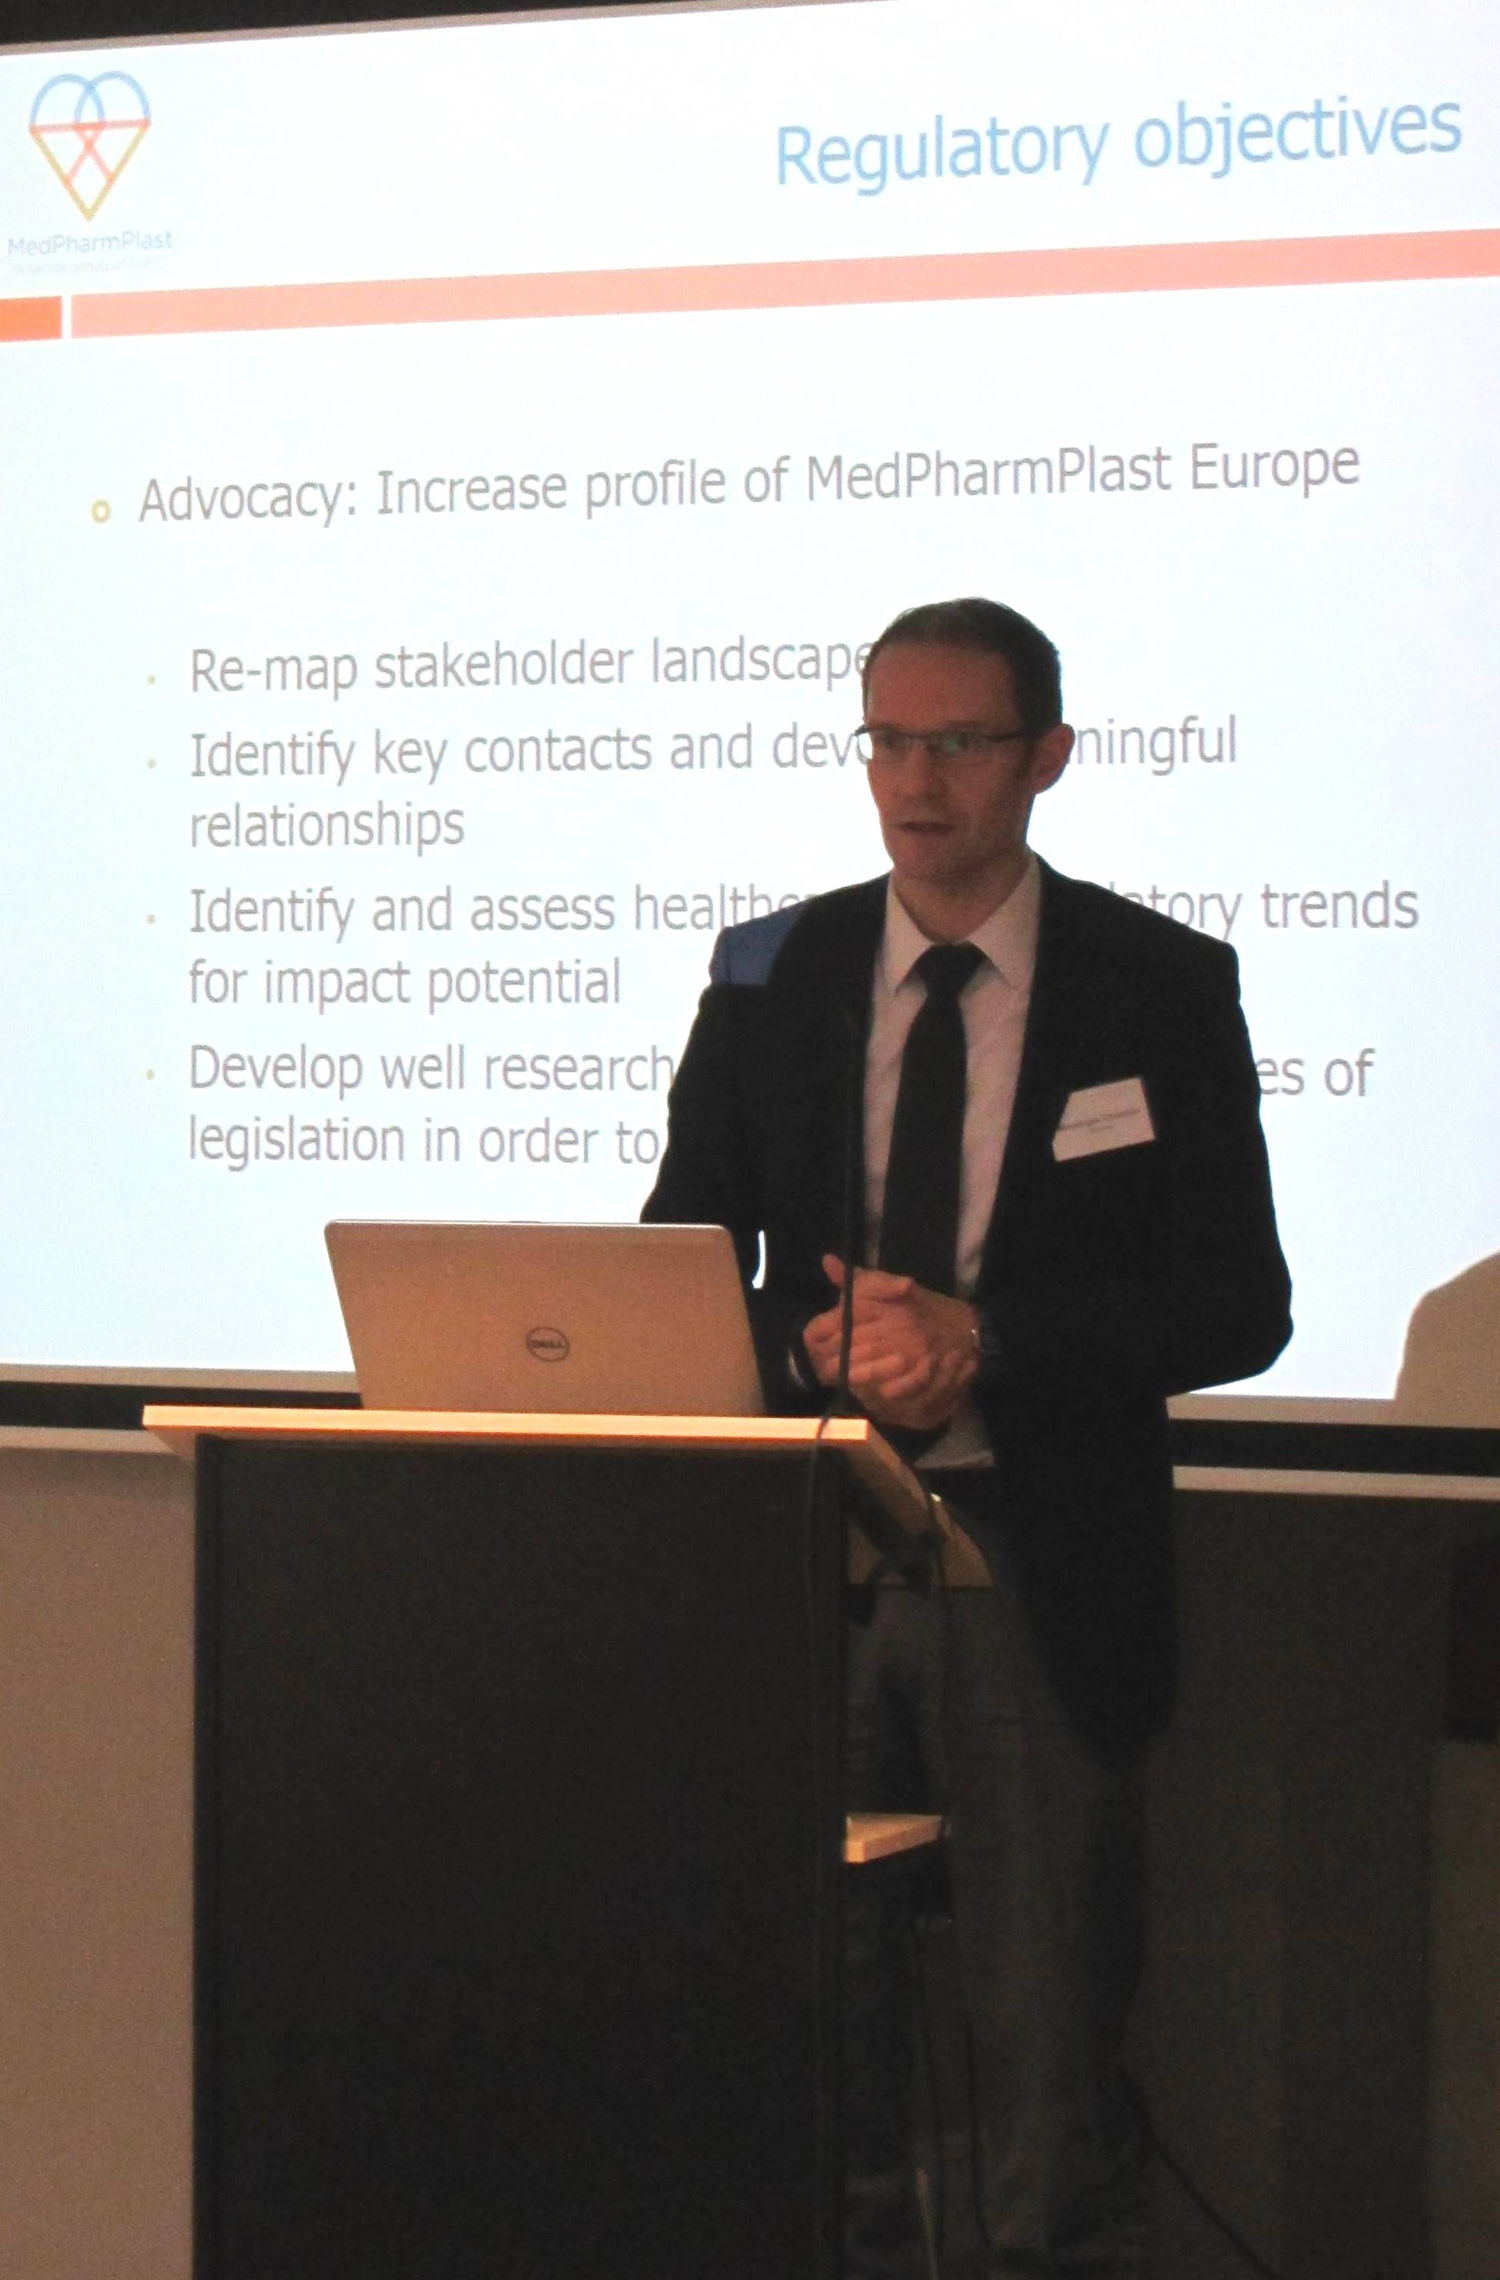 Christian Meusinger, new President of MedPharmPlast Europe, during his presentation